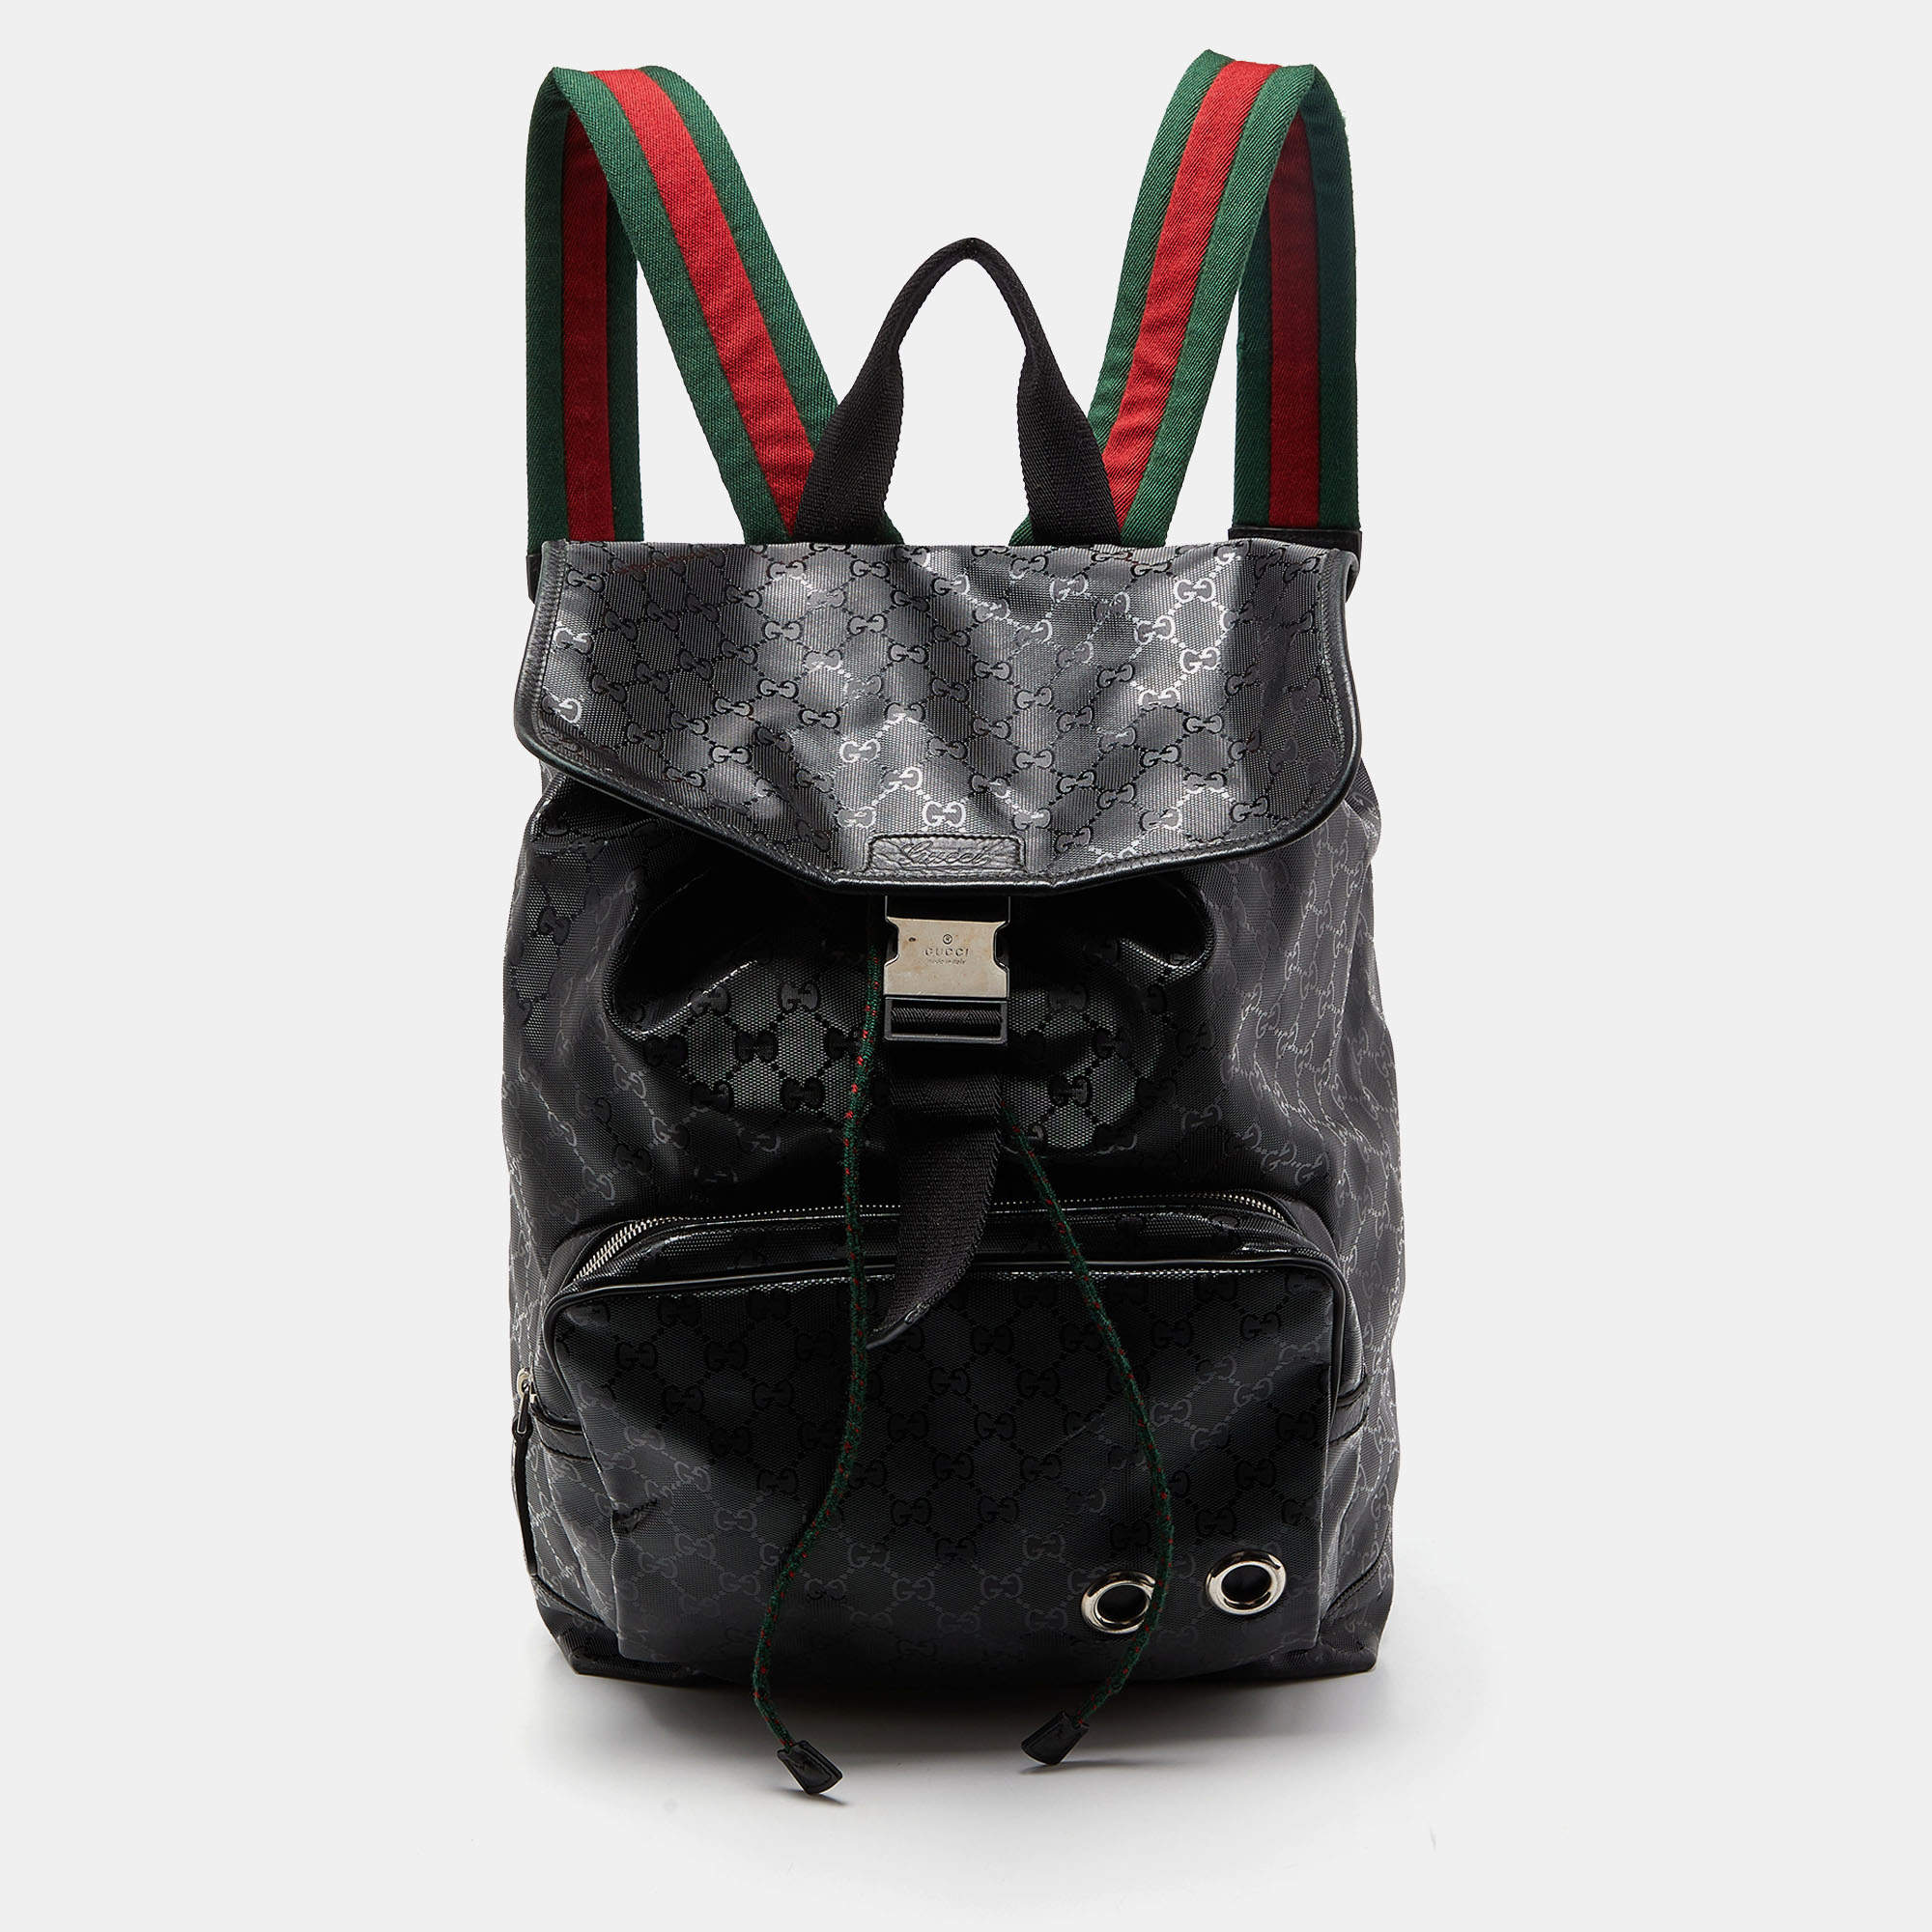 Gucci Men's Black Backpacks